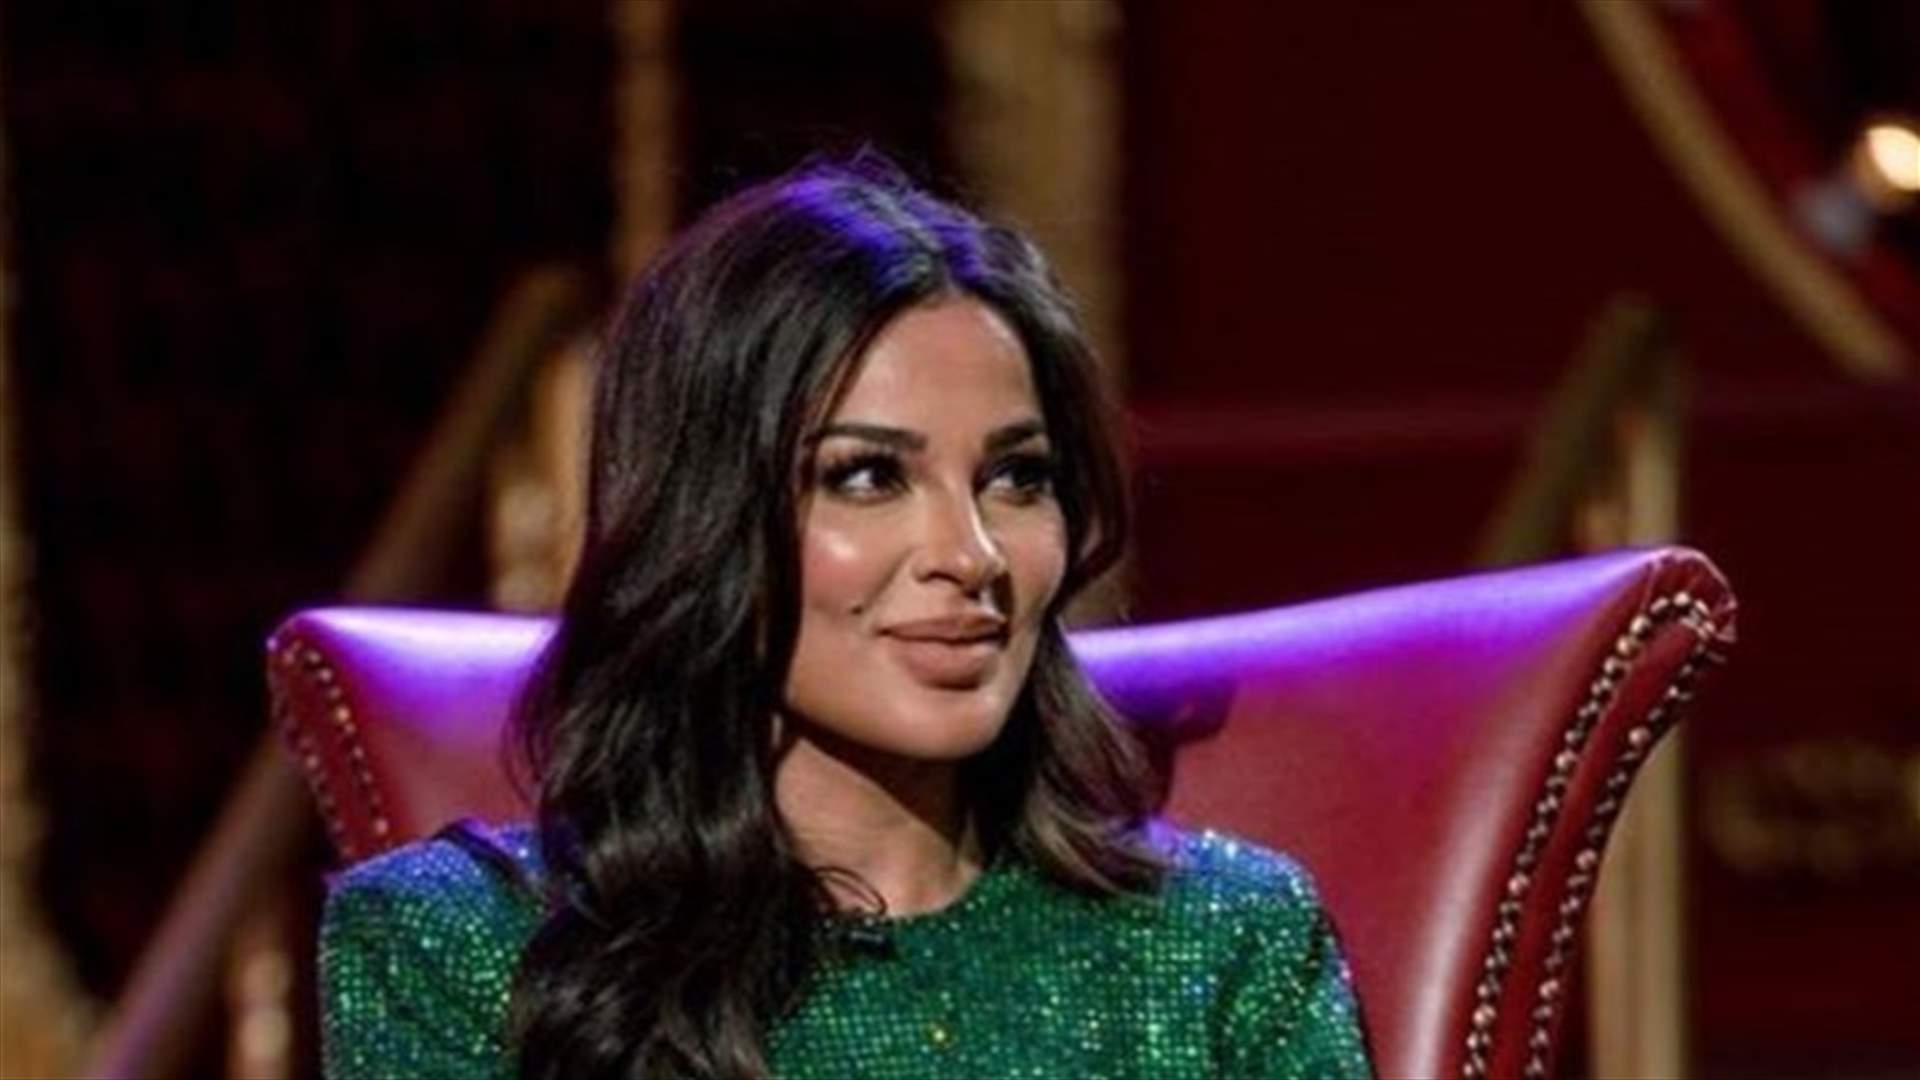 نادين نسيب نجيم تتحدّث عن الجنس قبل الزواج من جديد (فيديو)